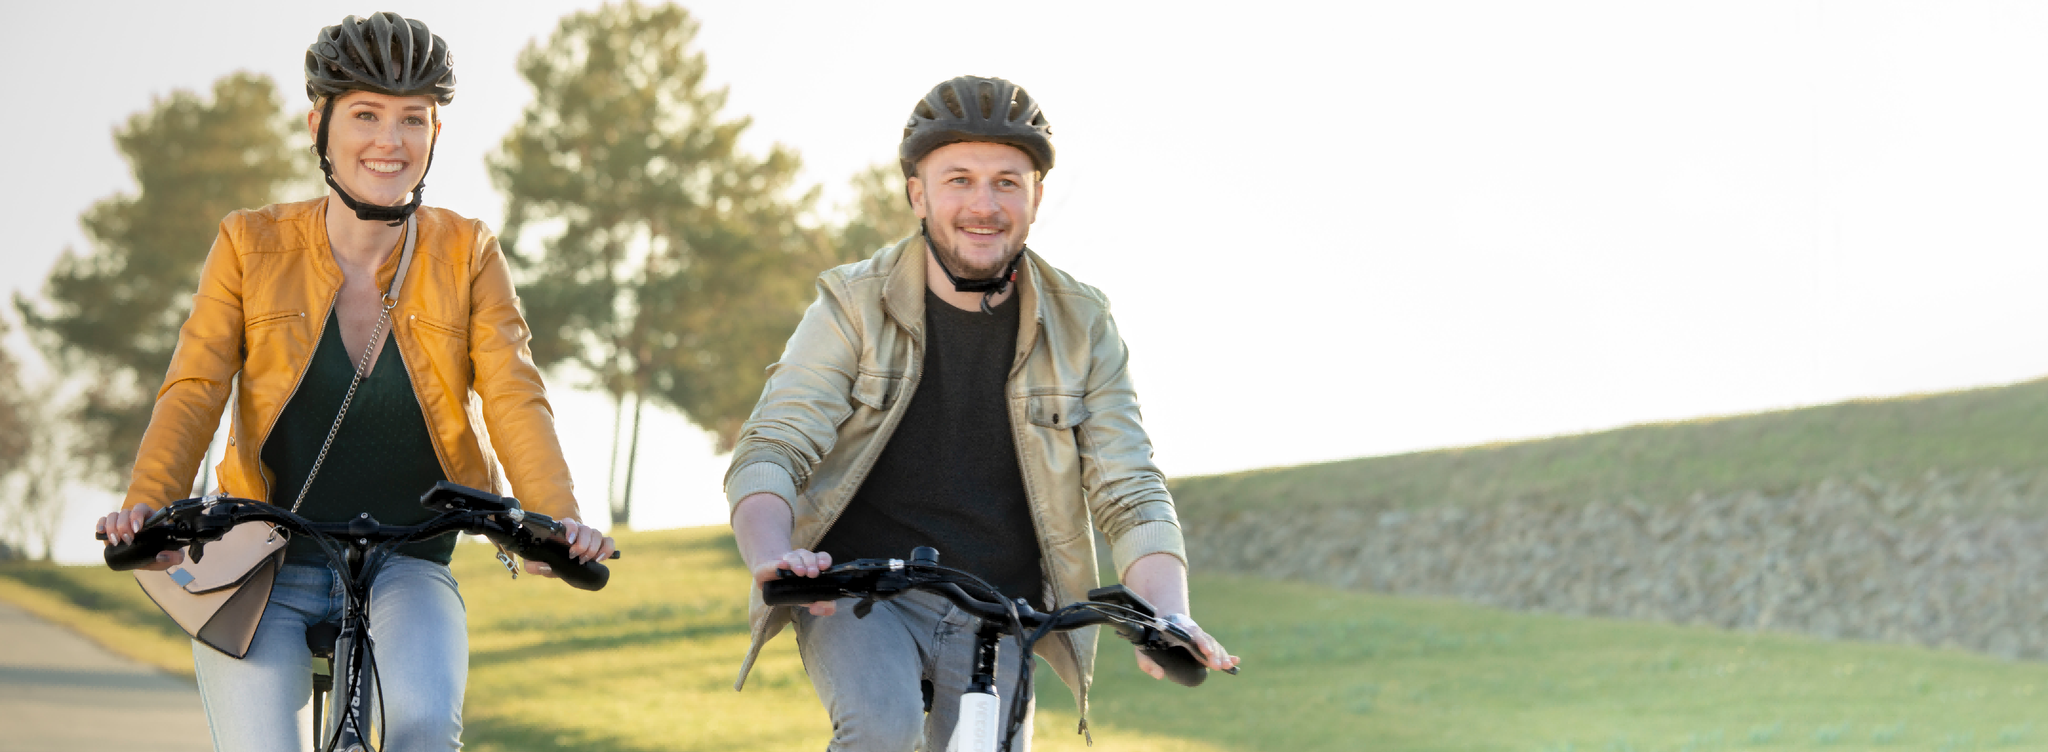 Dein Einstieg in die E-Mobilität丨E-Bike & Zubehör – Vecocraft E-Bike